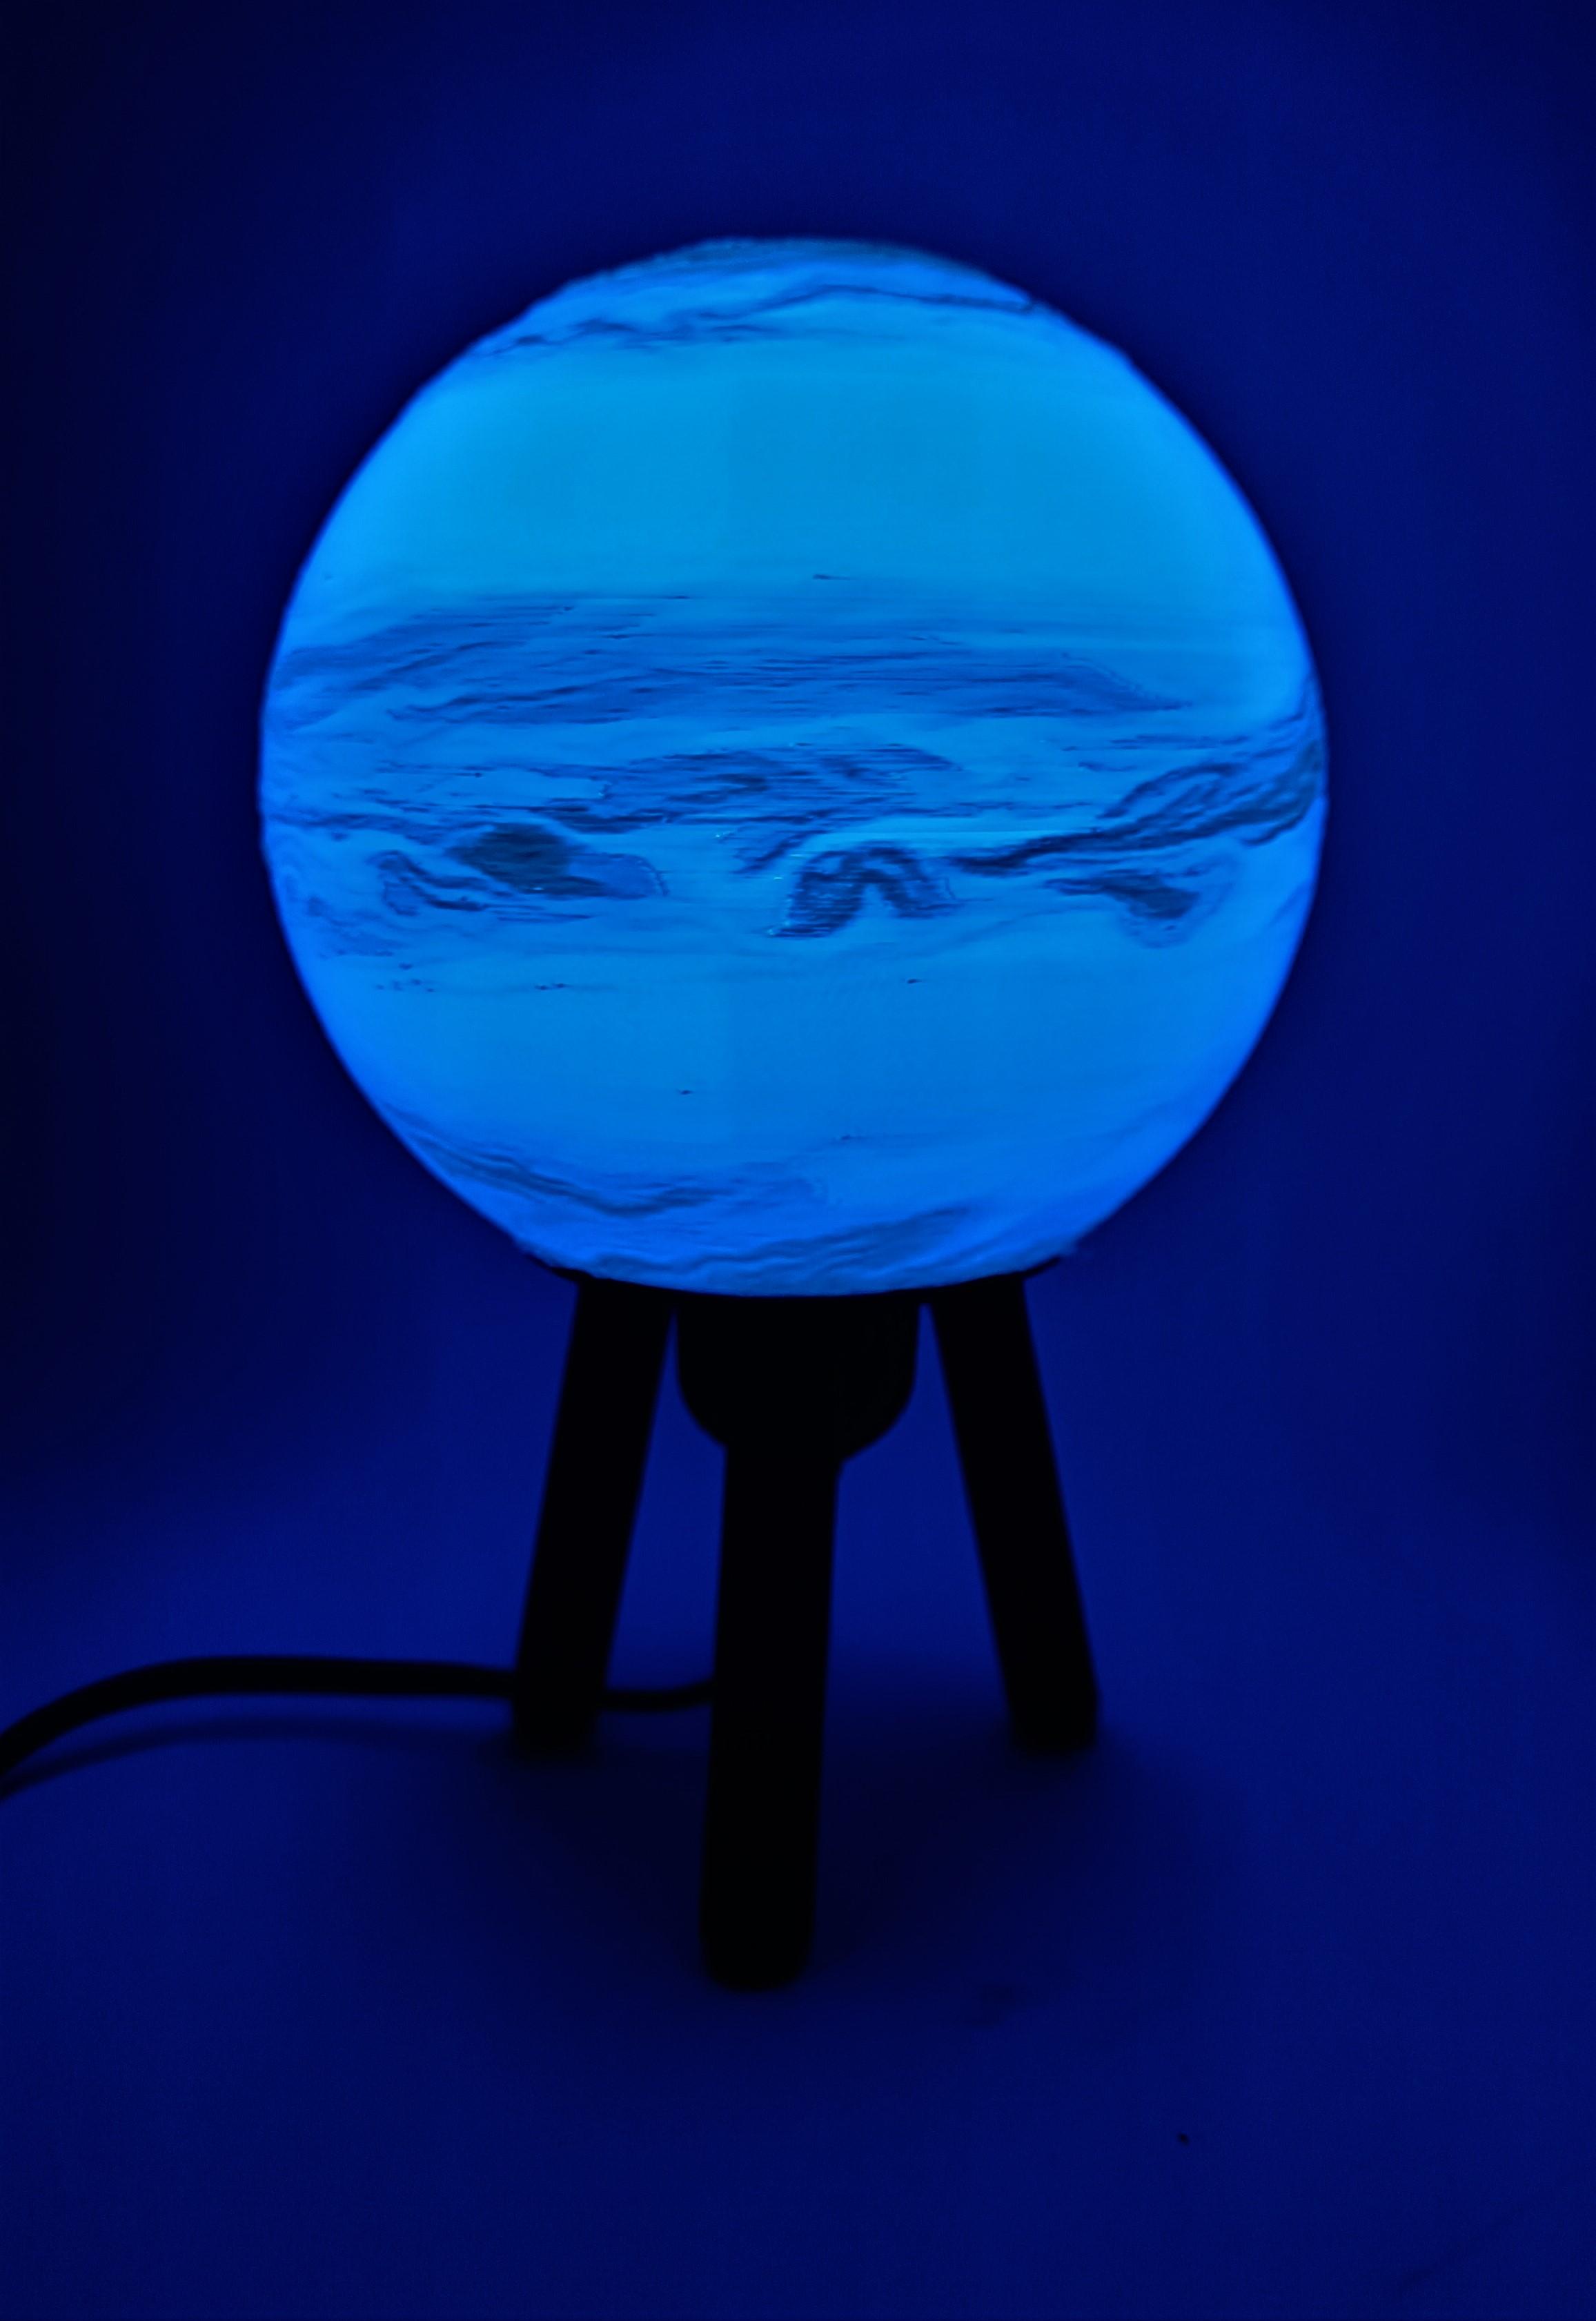 Hybrid Hanging/Desk Neptune Lamp 3d model